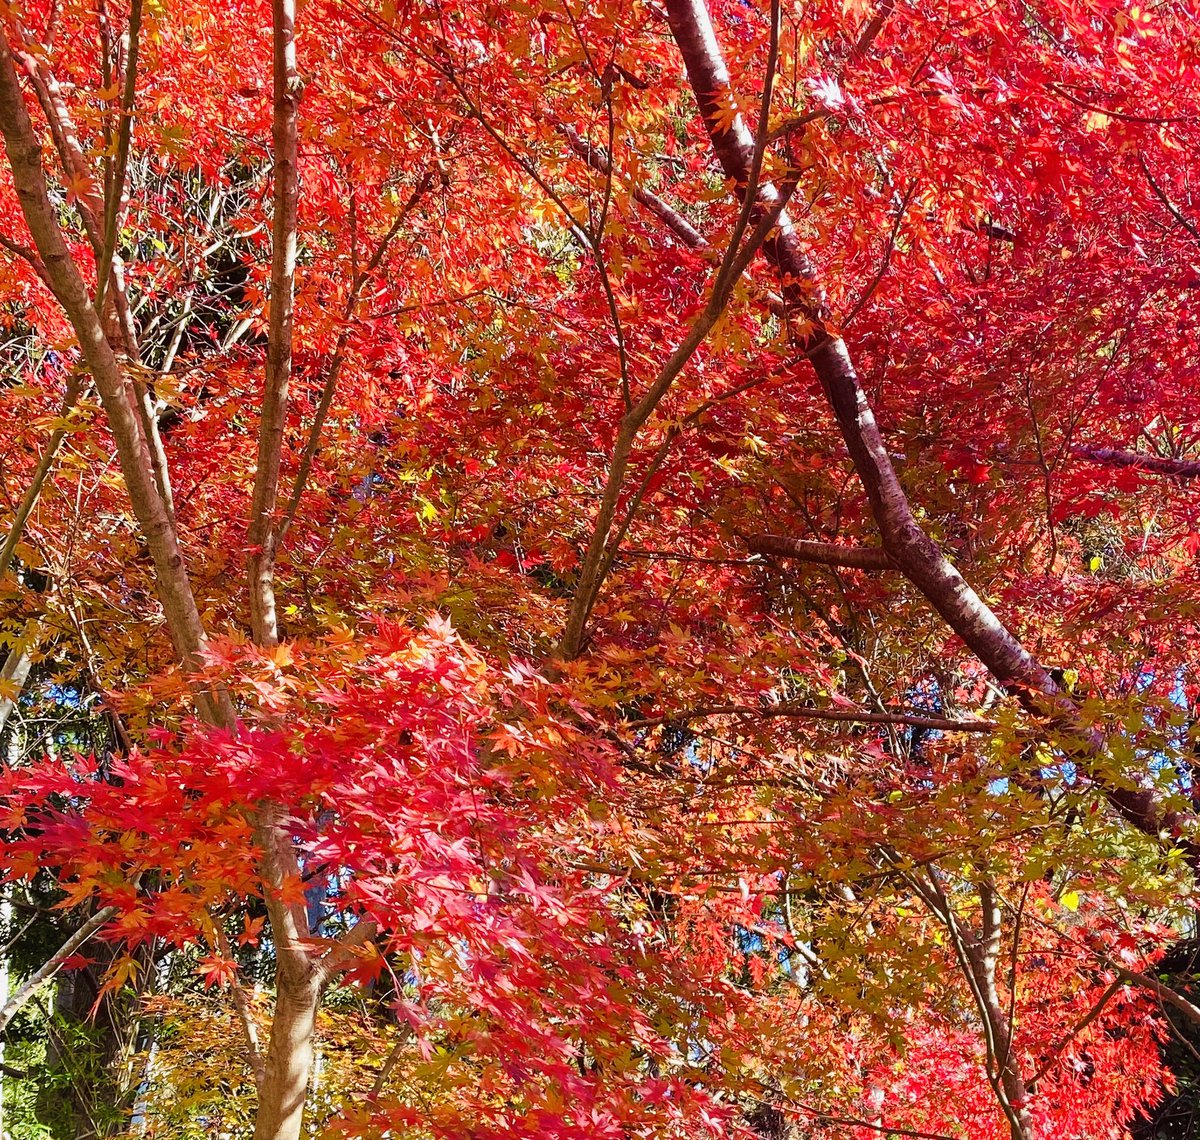 今日は富津市志駒川に沿って走る国道182号「通称もみじロード」に行ってきました。
鮮やかな紅葉、今が見頃です🍁